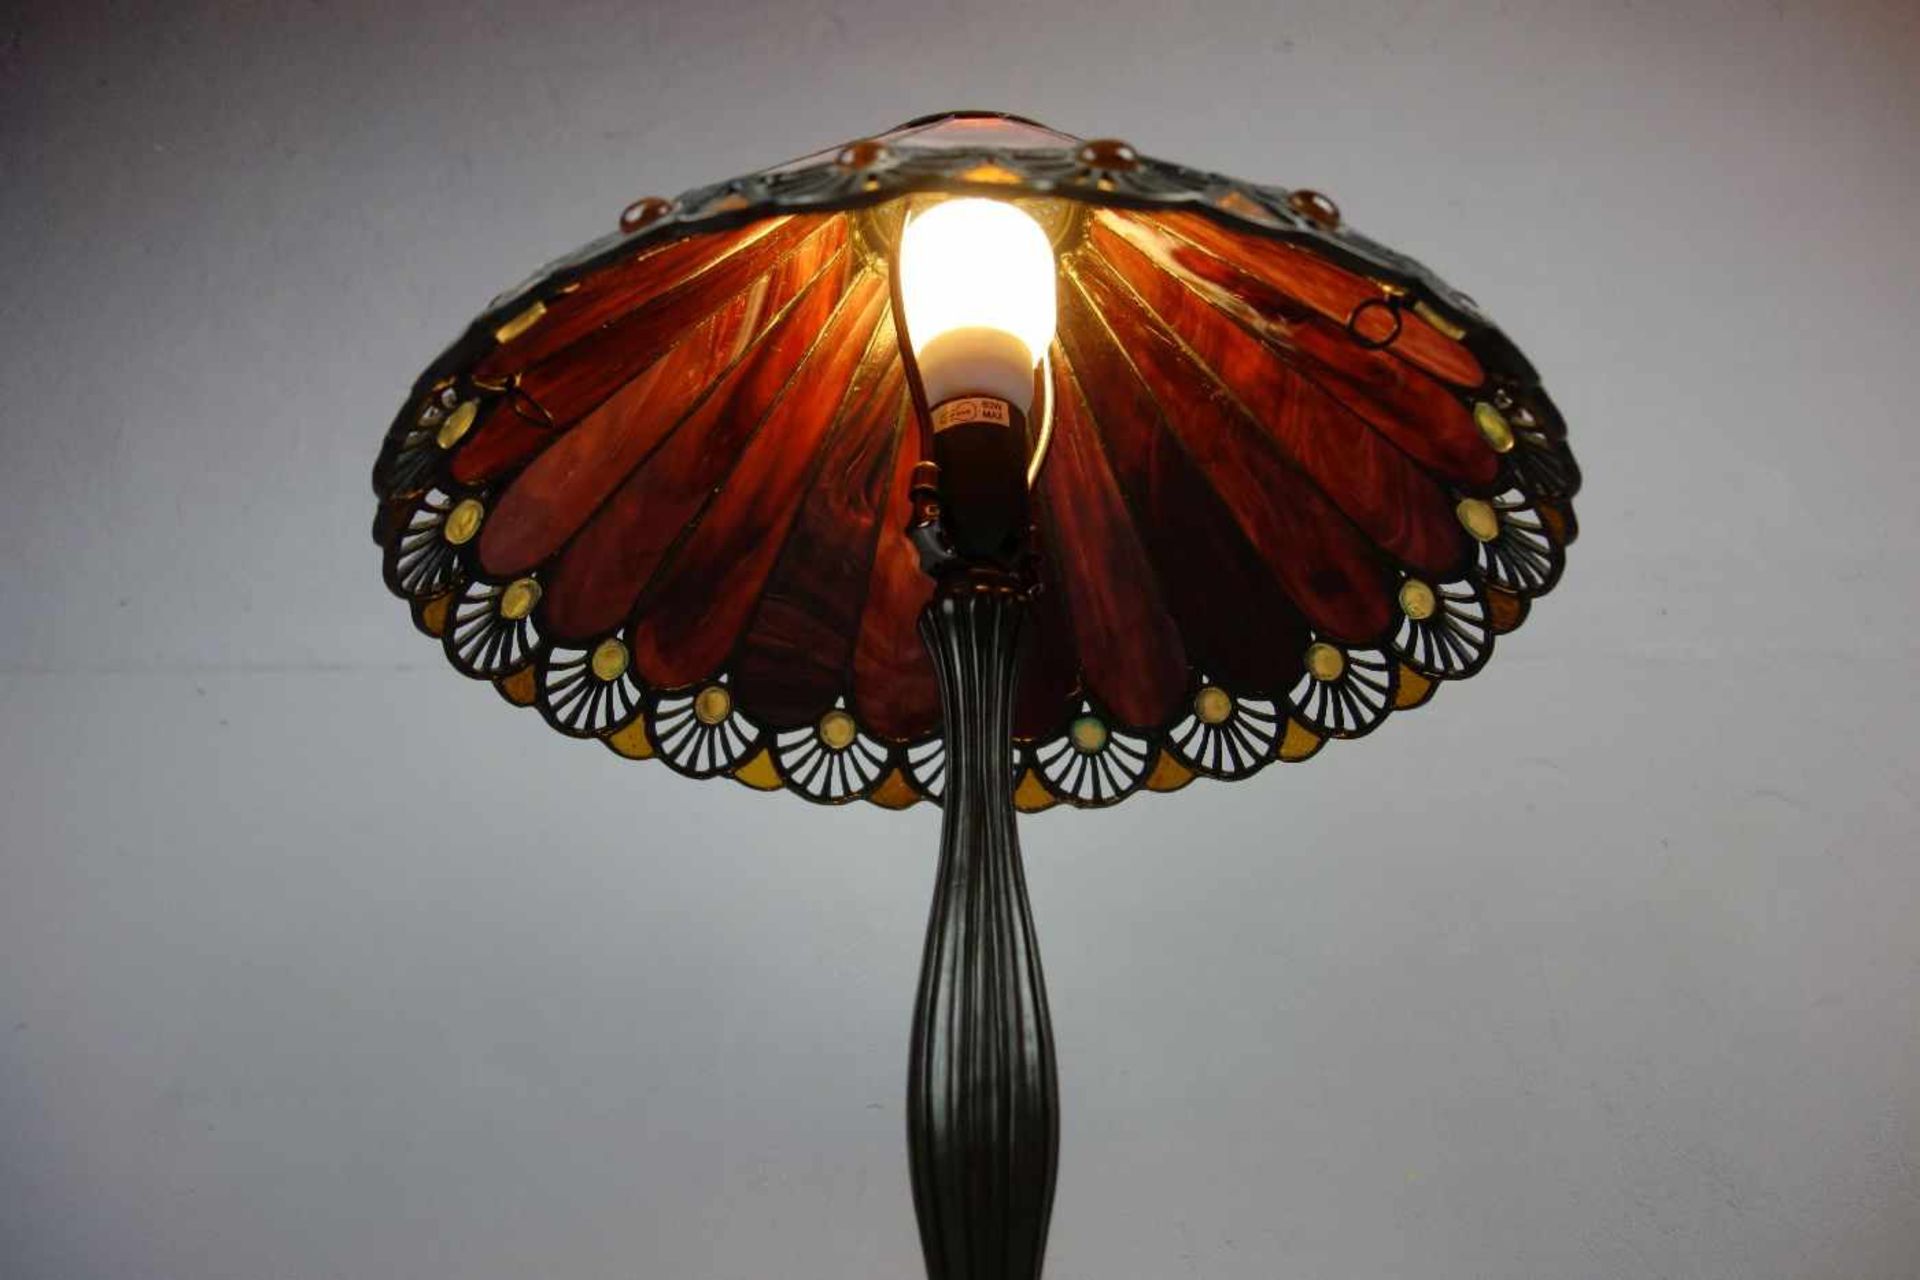 LAMPE / TISCHLAMPE im Stil einer Tiffany-Lampe, 2. H. 20. Jh., bronzierter Massefuß in - Bild 2 aus 4